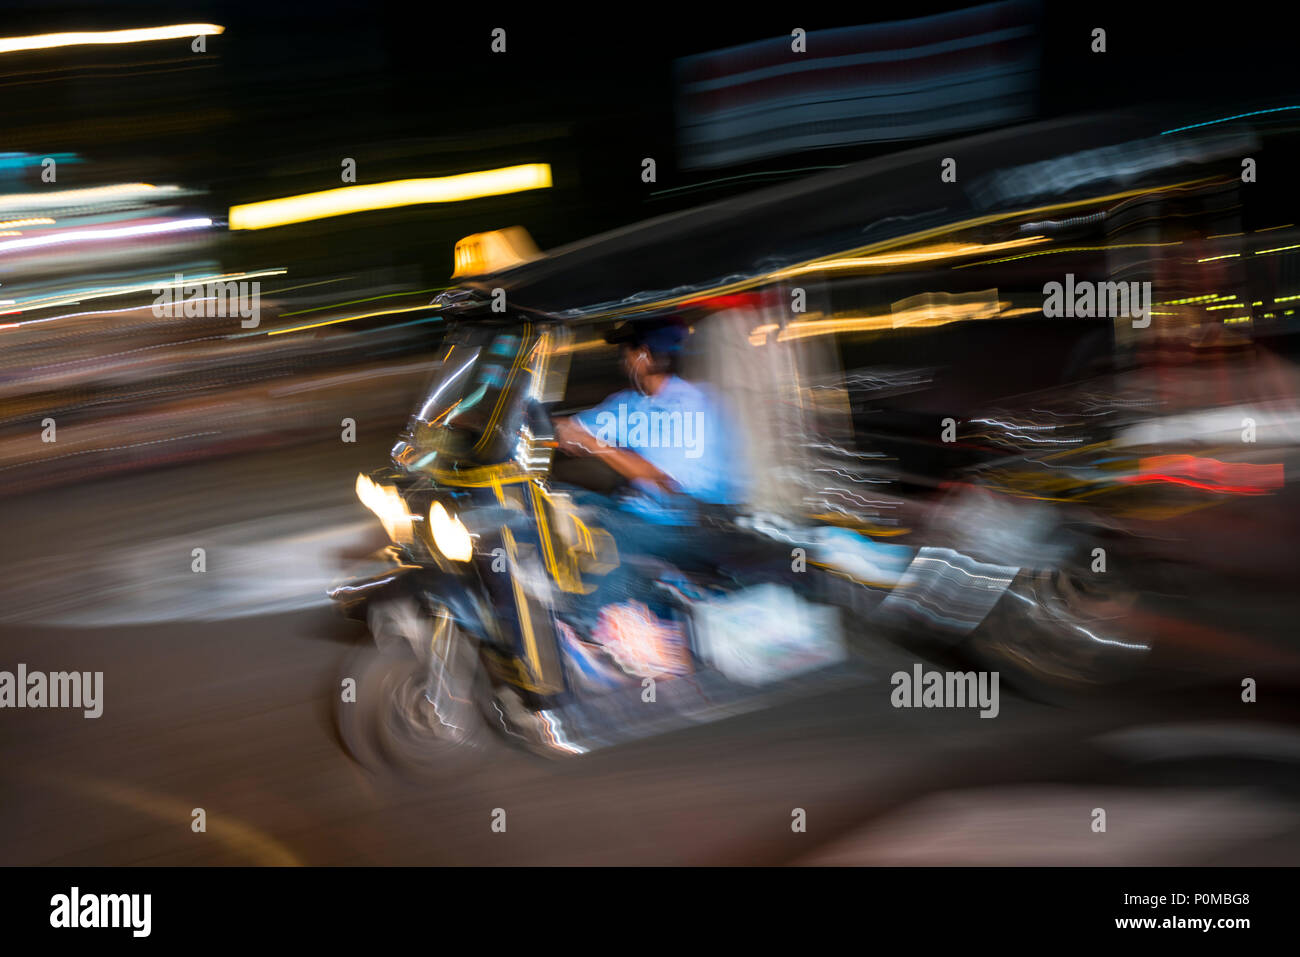 Abstrakte panning Technik schaffen Bewegung&Unschärfe eines Tuk-tuk Taxi fahren in der Nacht in den Straßen von Chiang Mai im Norden von Thailand Stockfoto